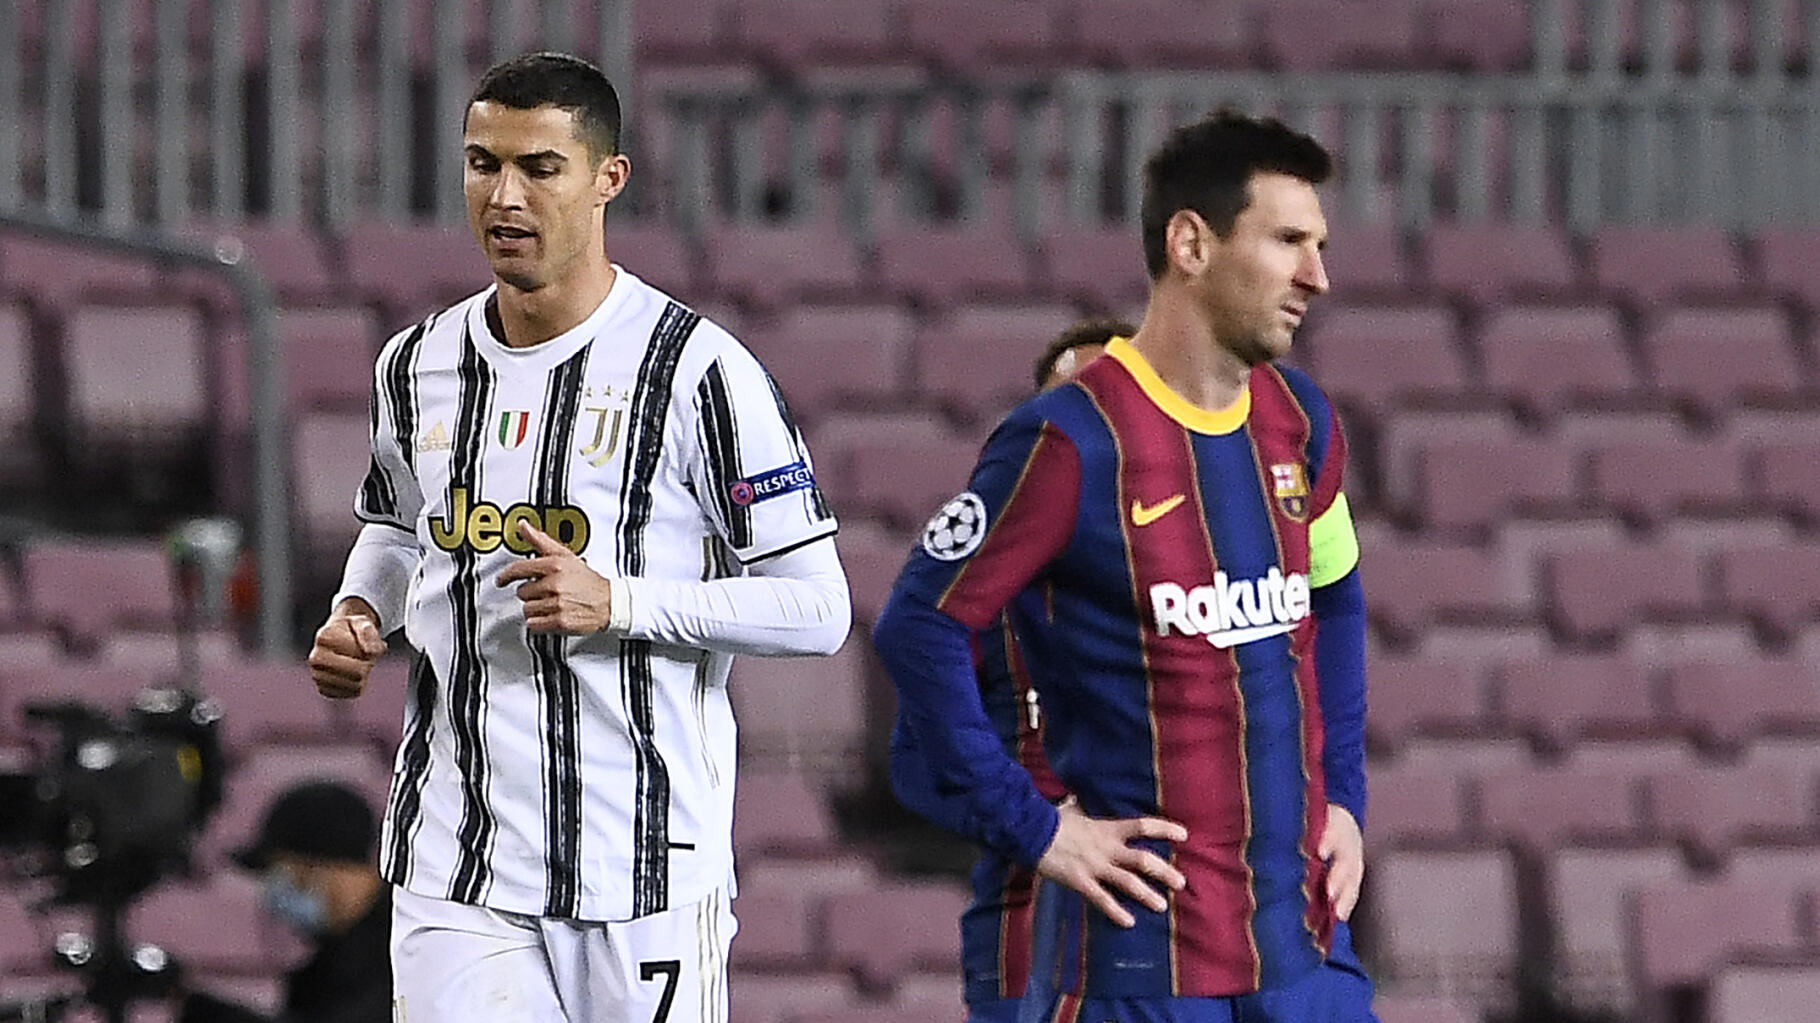 Pour la dernière Coupe du monde de Messi, Ronaldo a bien l'intention de le  mettre « échec et mat »